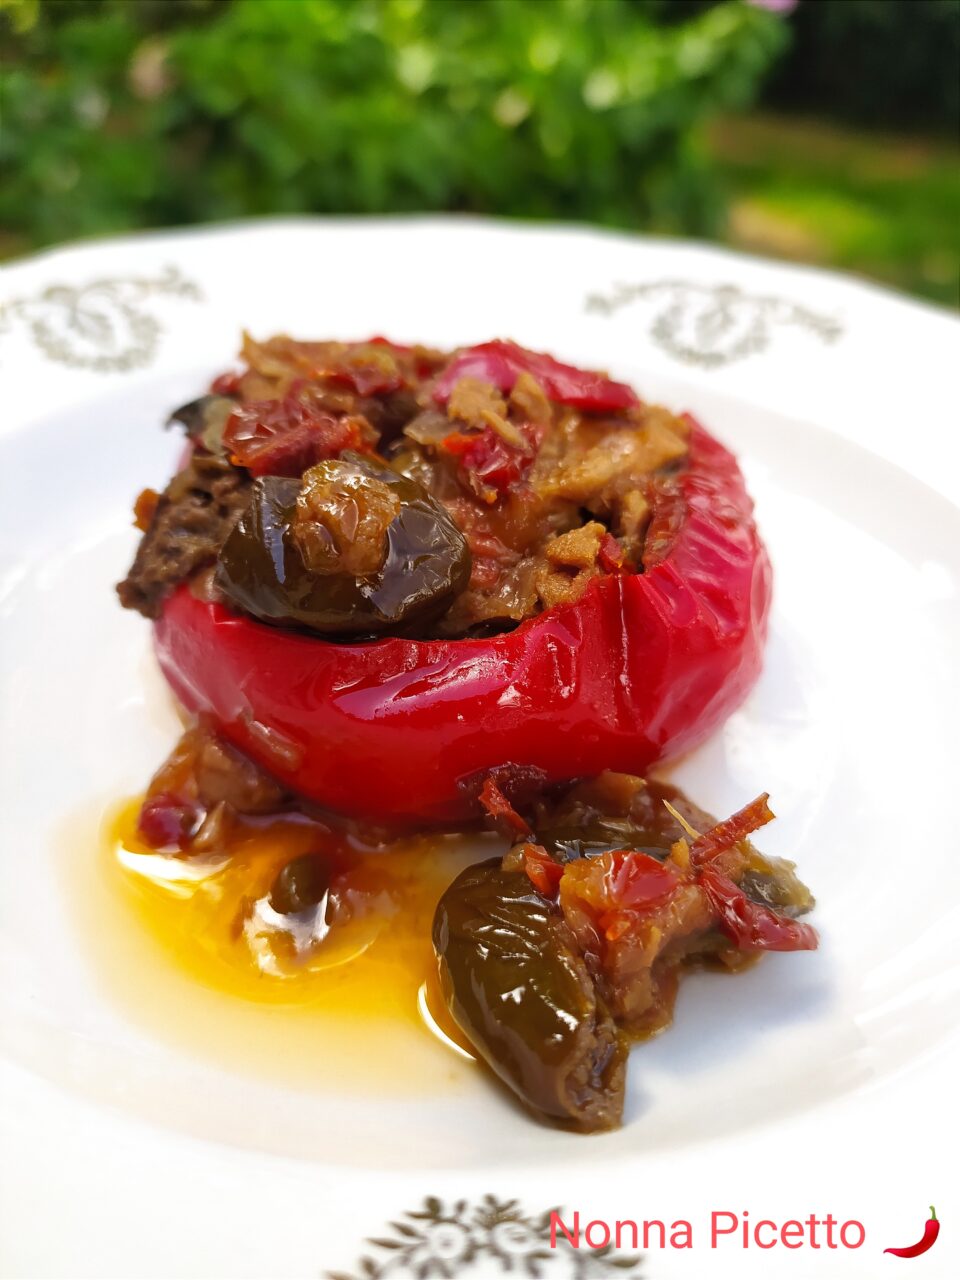 Peperoni topepo ripieni di tonno olive e capperi cotti in padella ricetta light